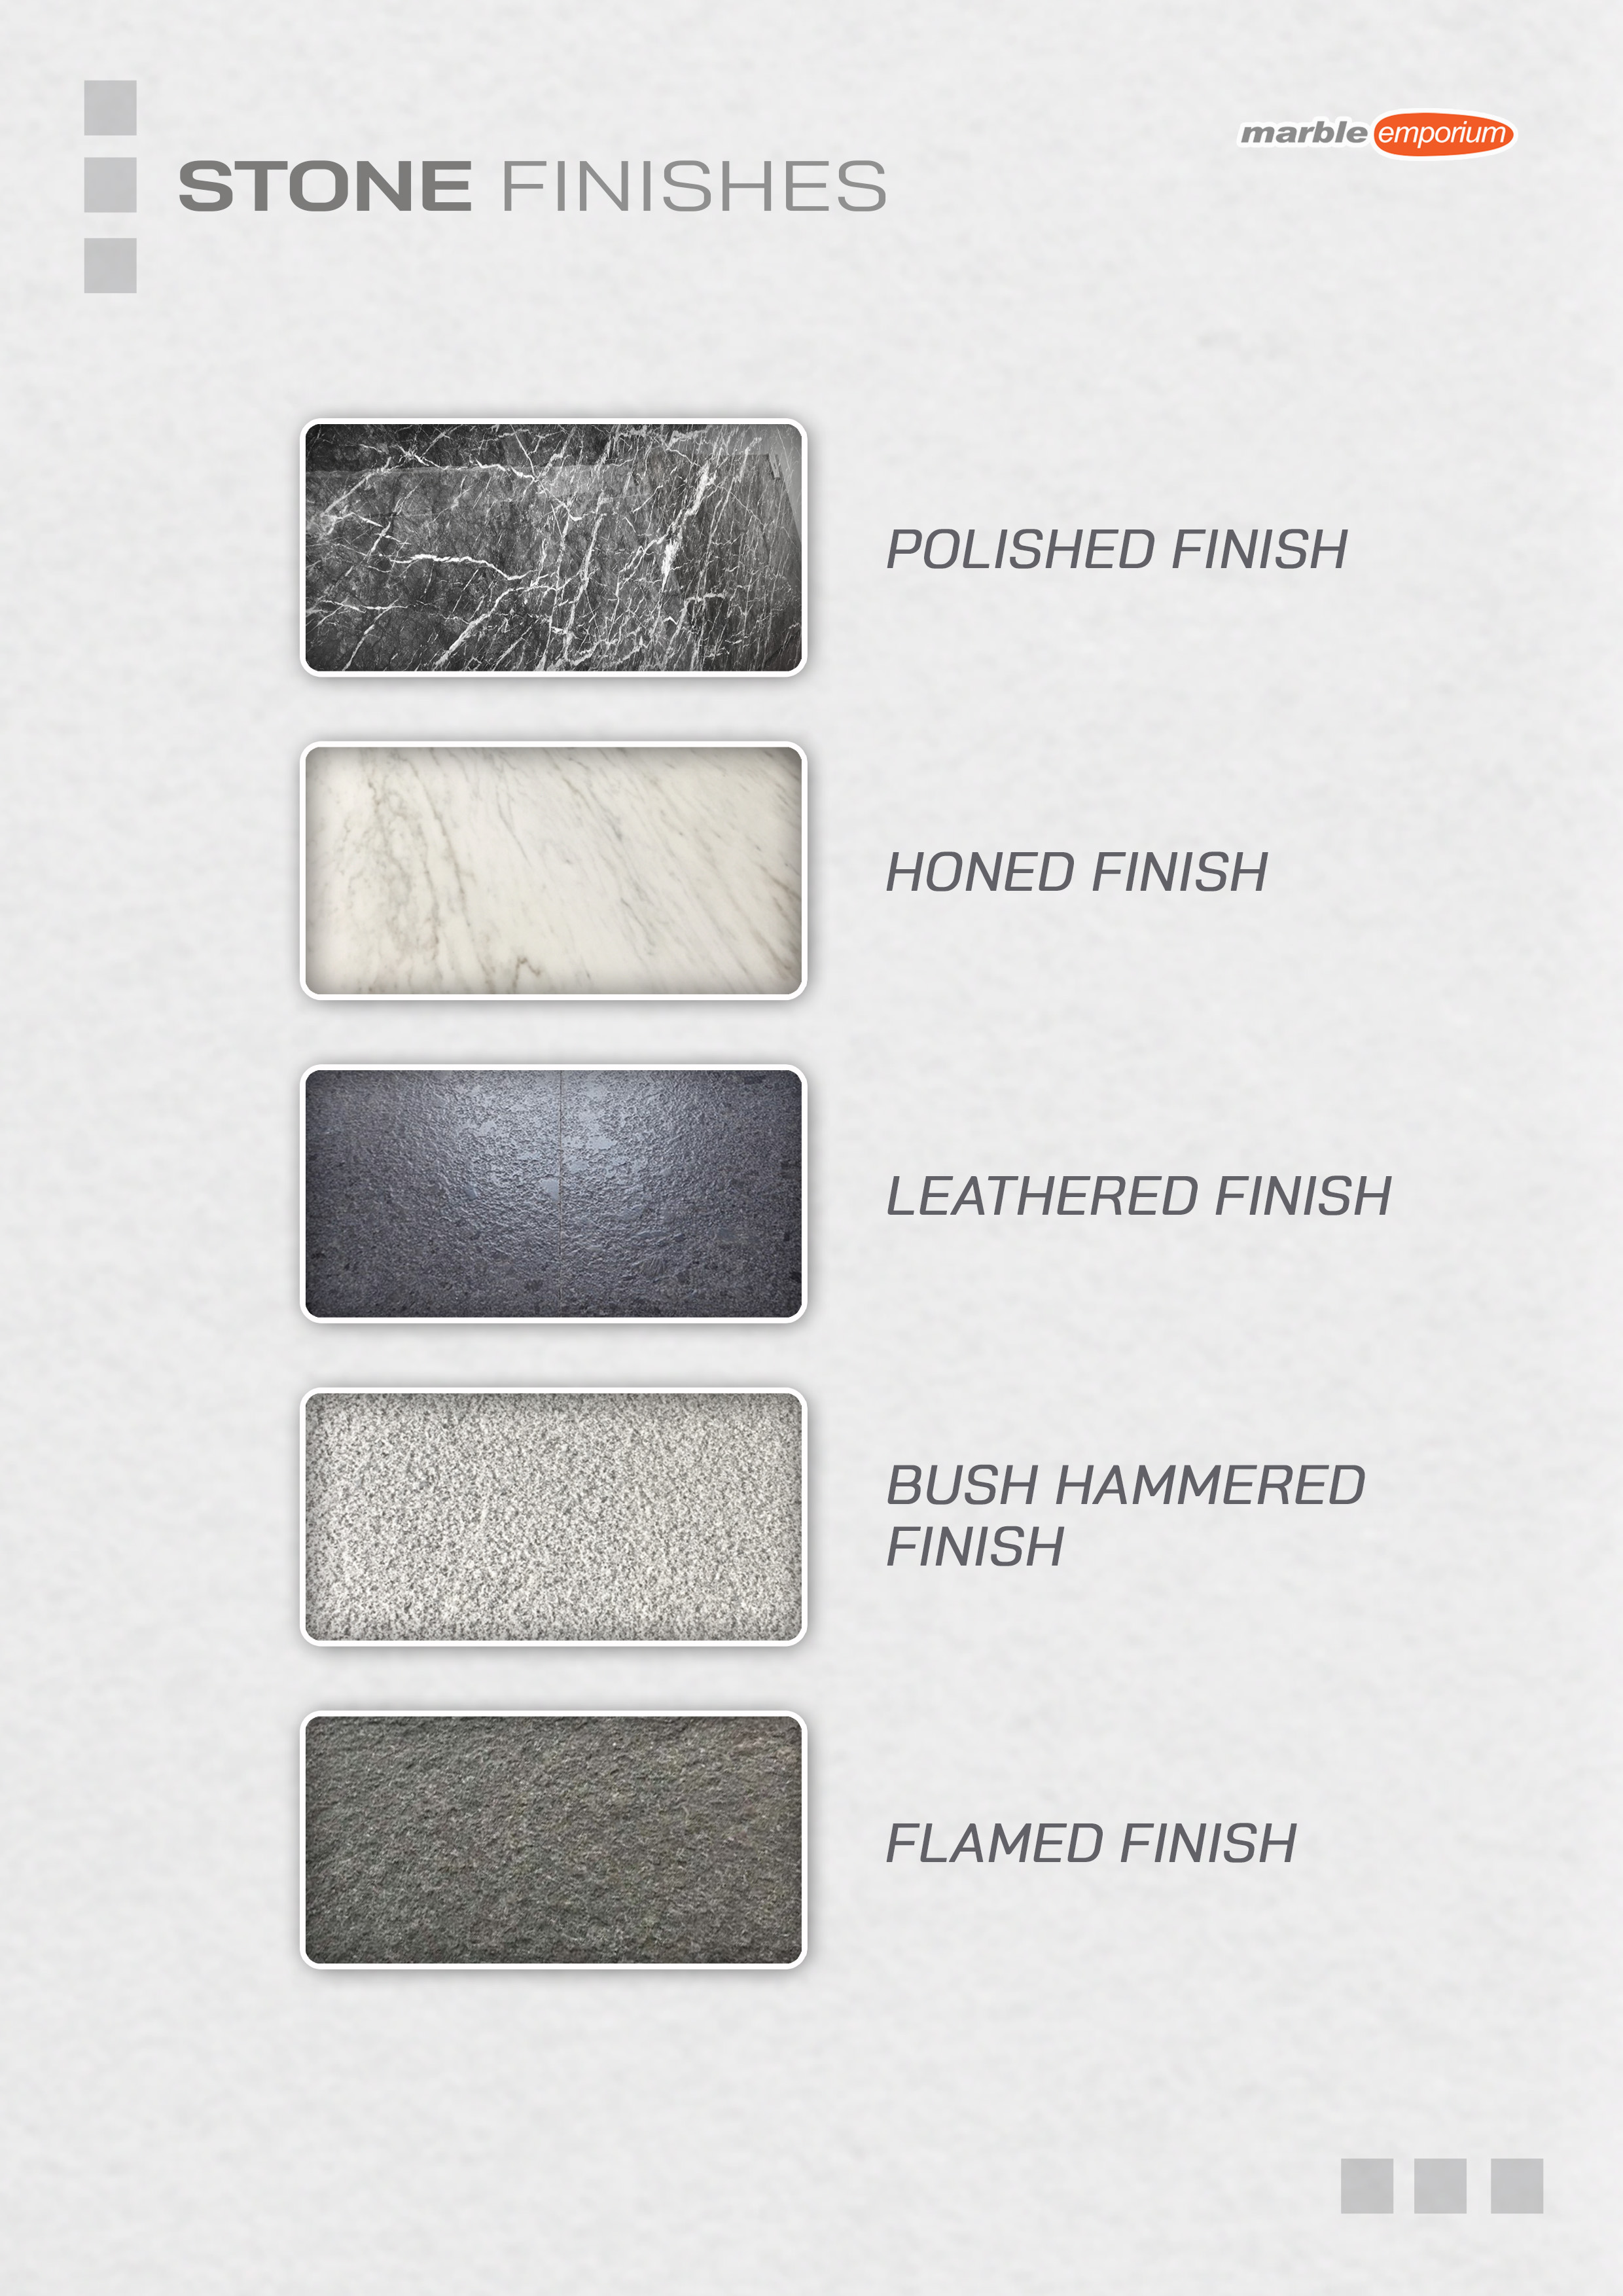 Marble Emporium | How we work page 08 - Available Stone Finishes - Polished finish, Honed finish, Leathered finish -Bush hammered finish, Flamed finish 